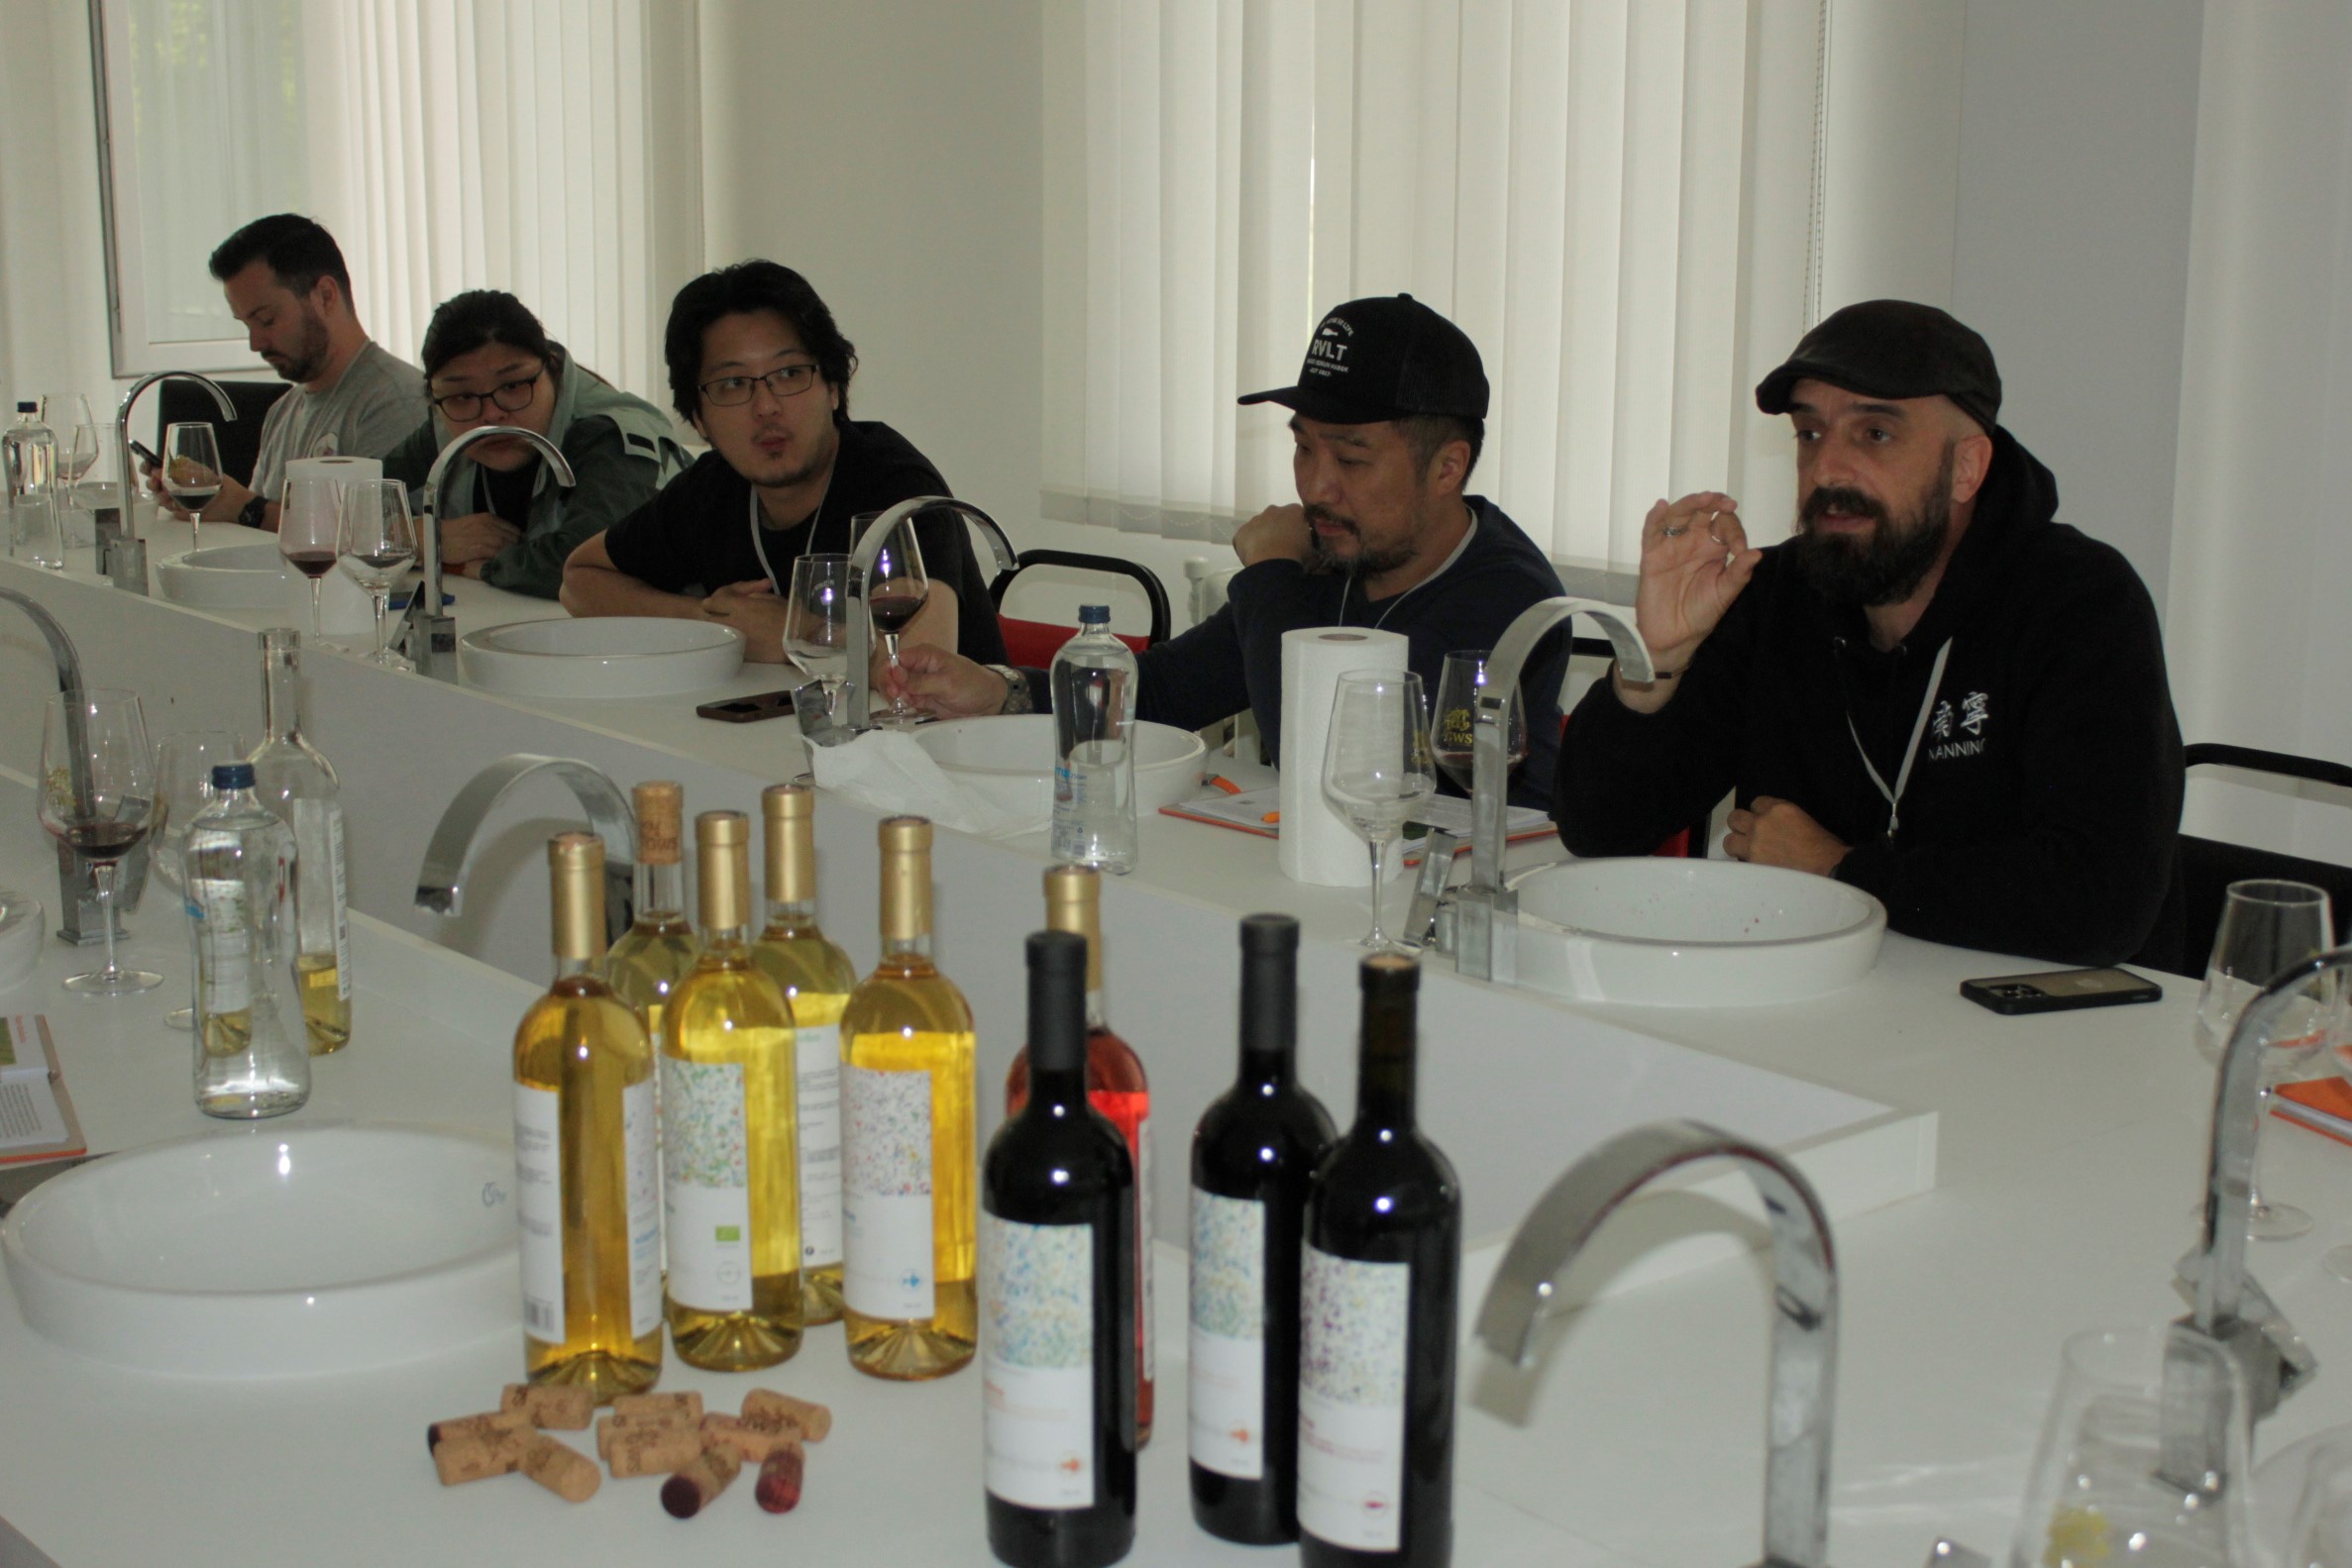 ღვინის ეროვნული სააგენტოს მხარდაჭერით, საქართველოს აზიის ქვეყნებიდან ღვინის პროფესიონალები სტუმრობდნენ